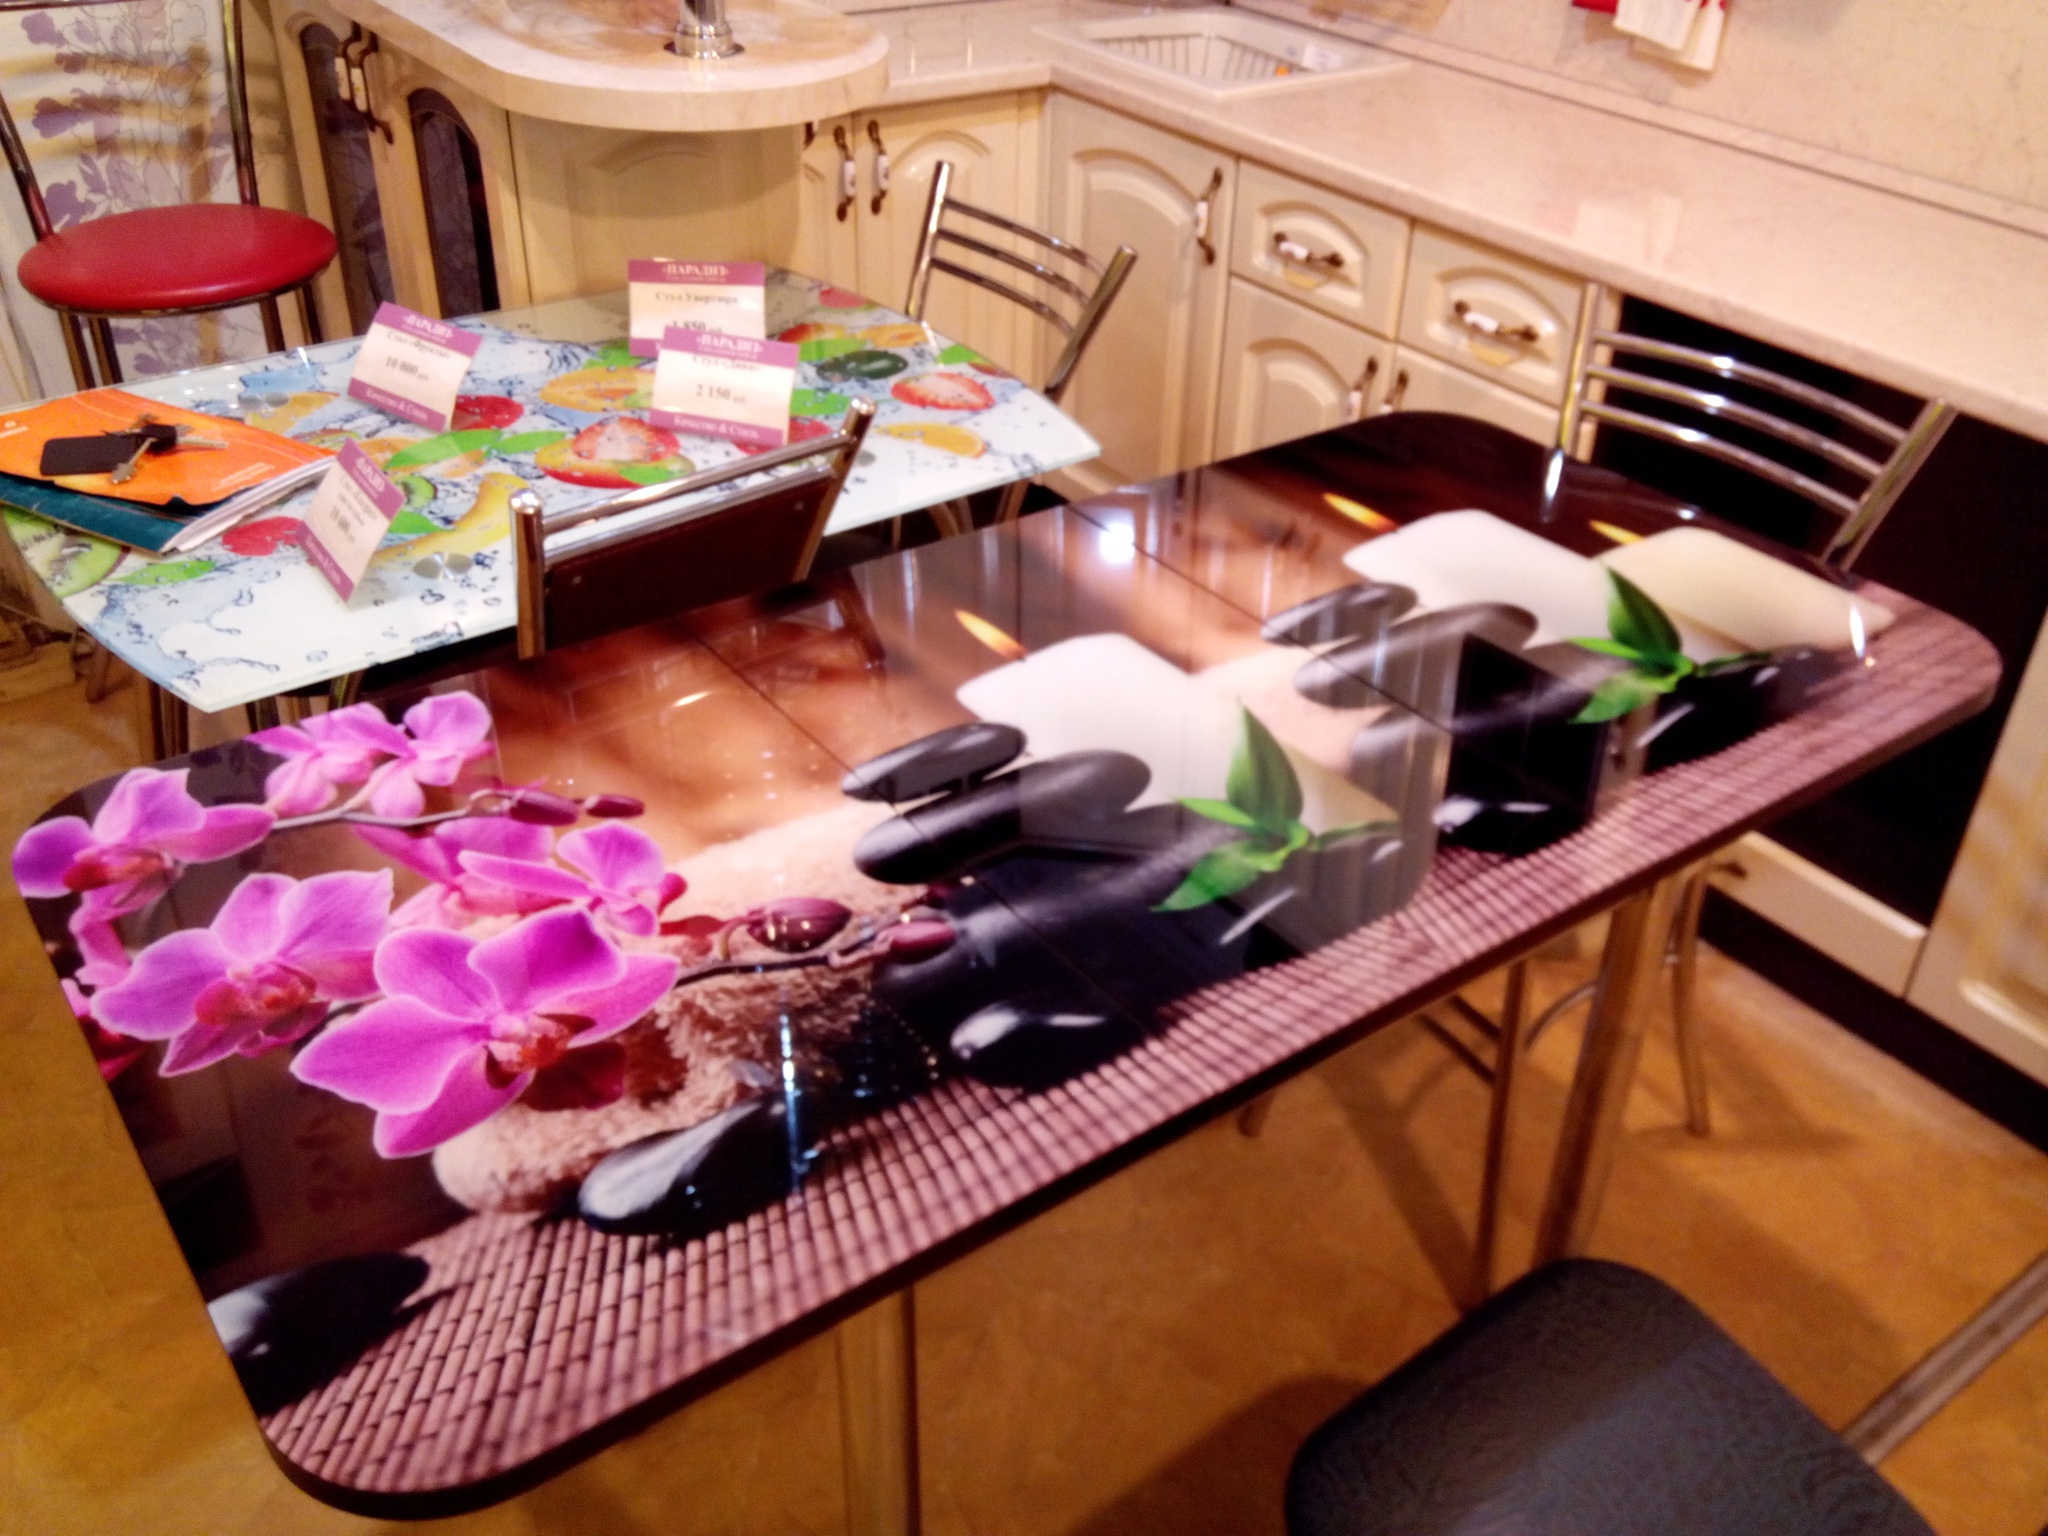 столы из цветного стекла для кухни